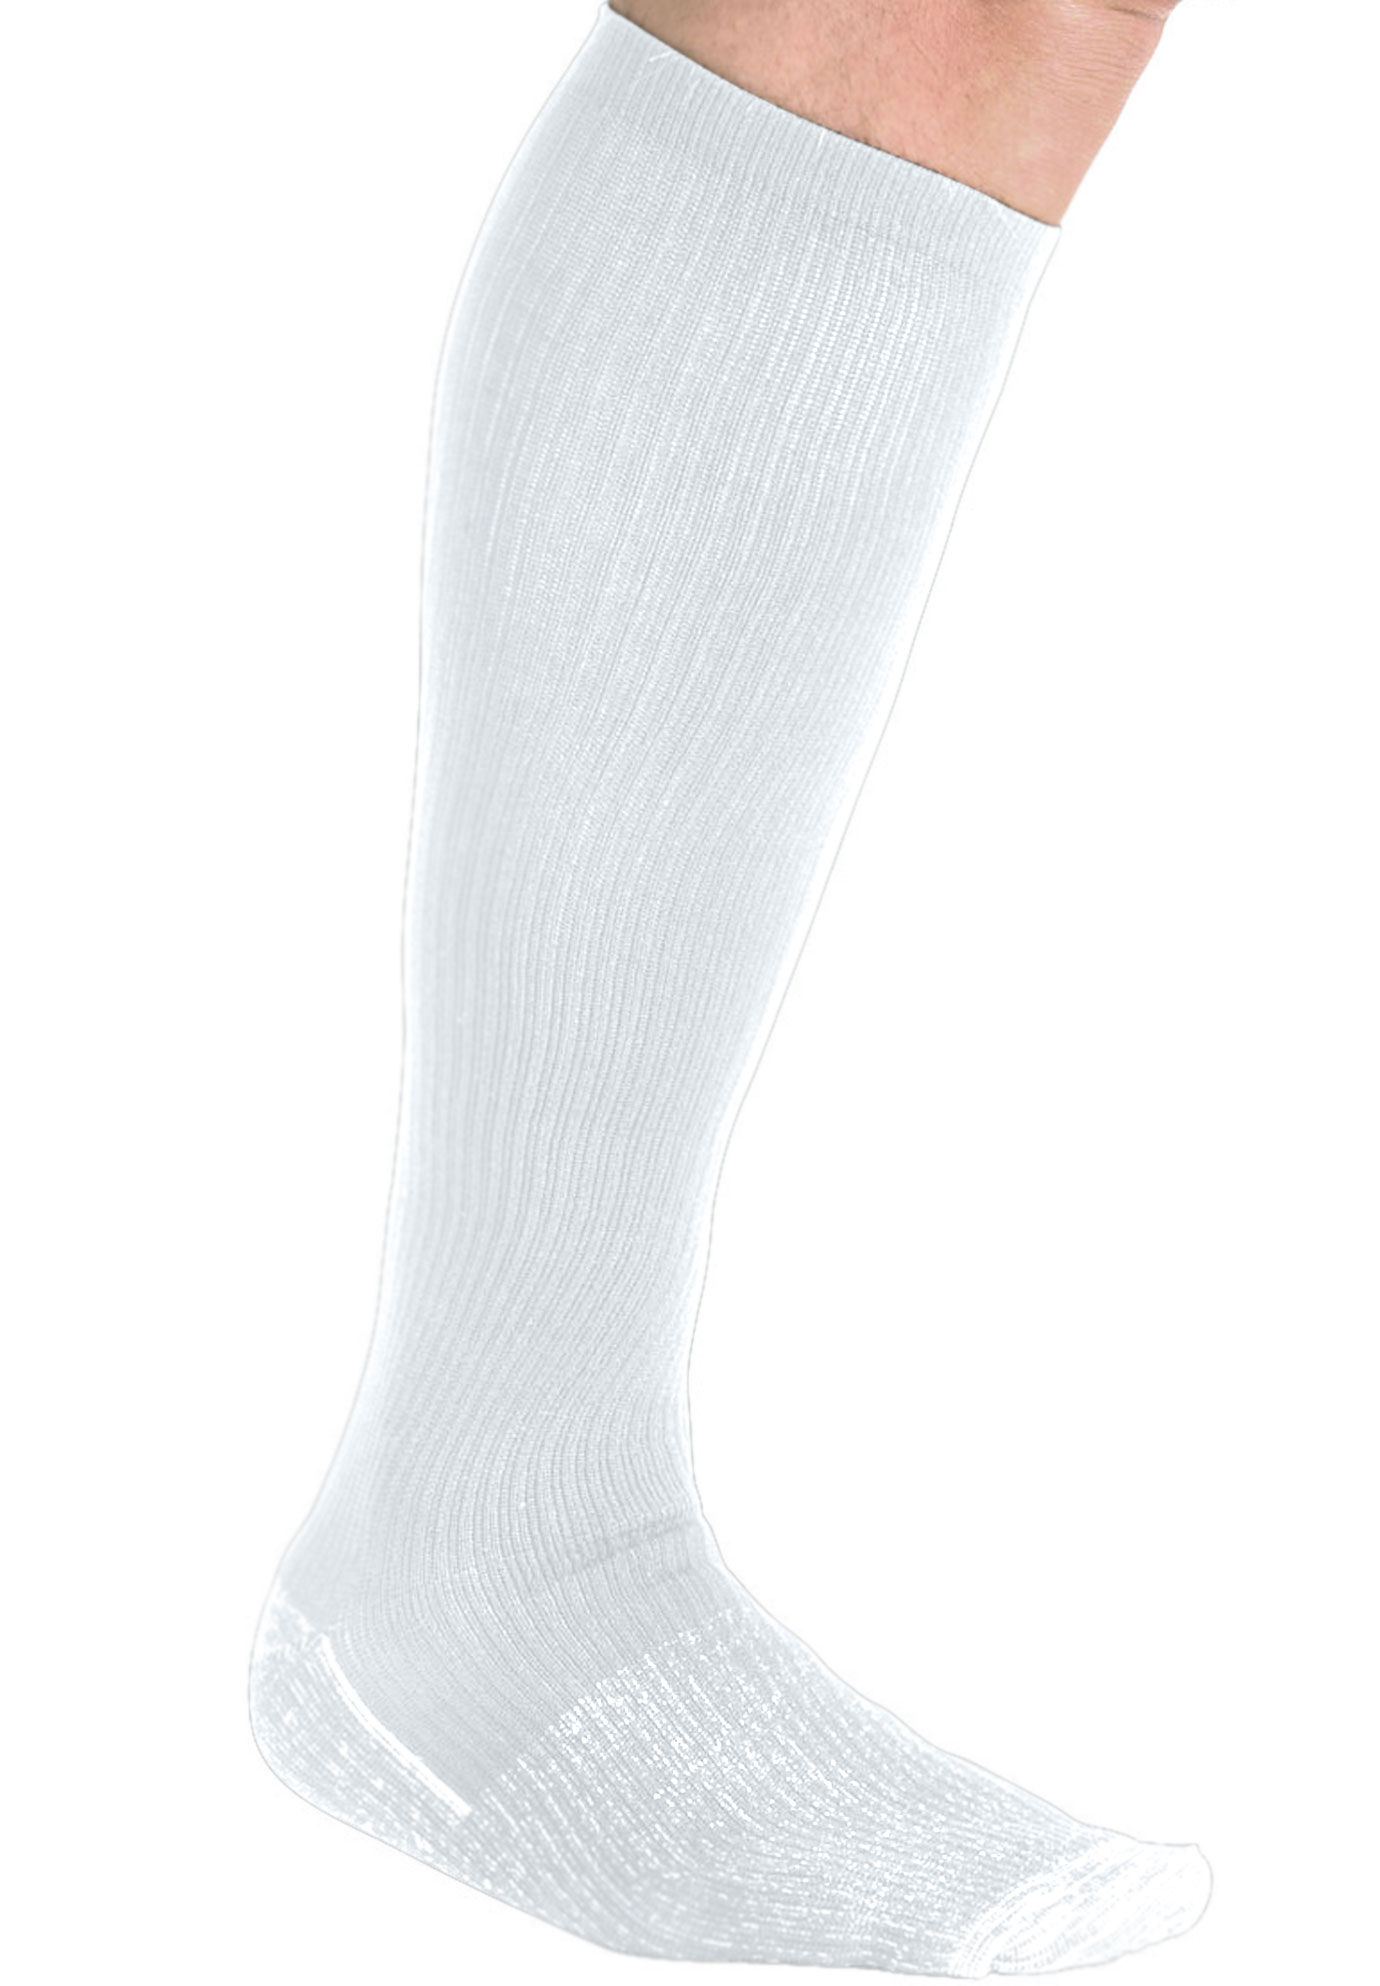 fila compression socks